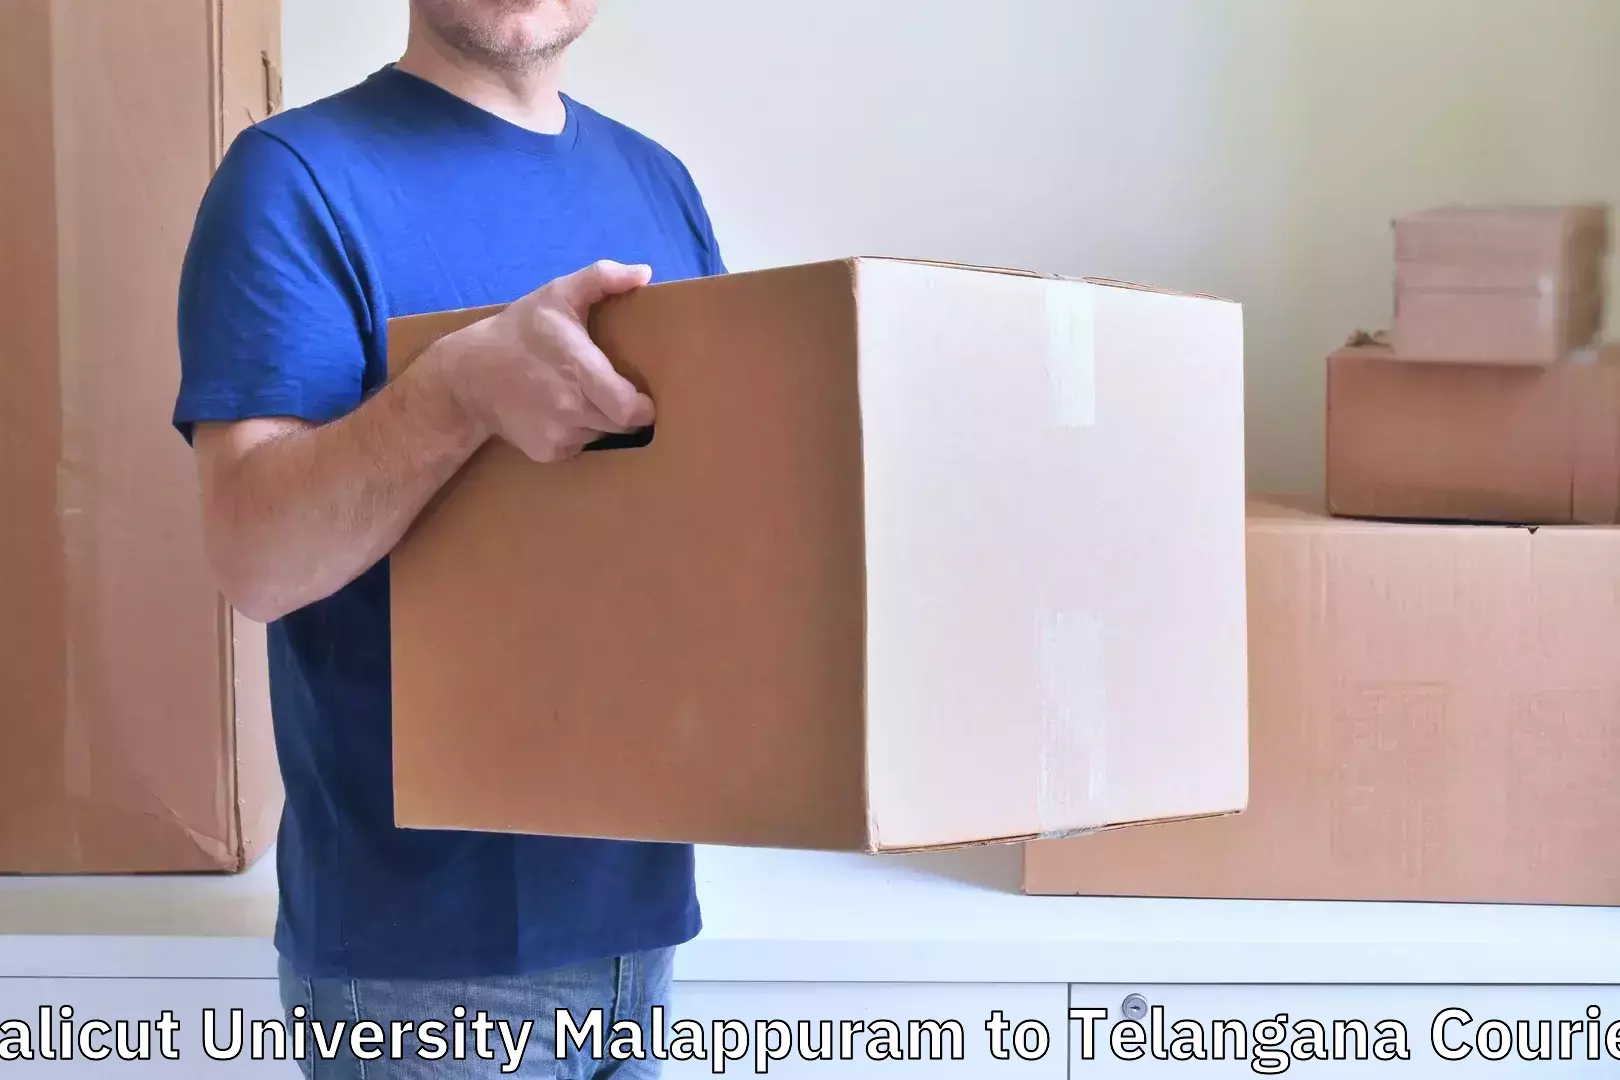 Baggage shipping schedule Calicut University Malappuram to Choppadandi